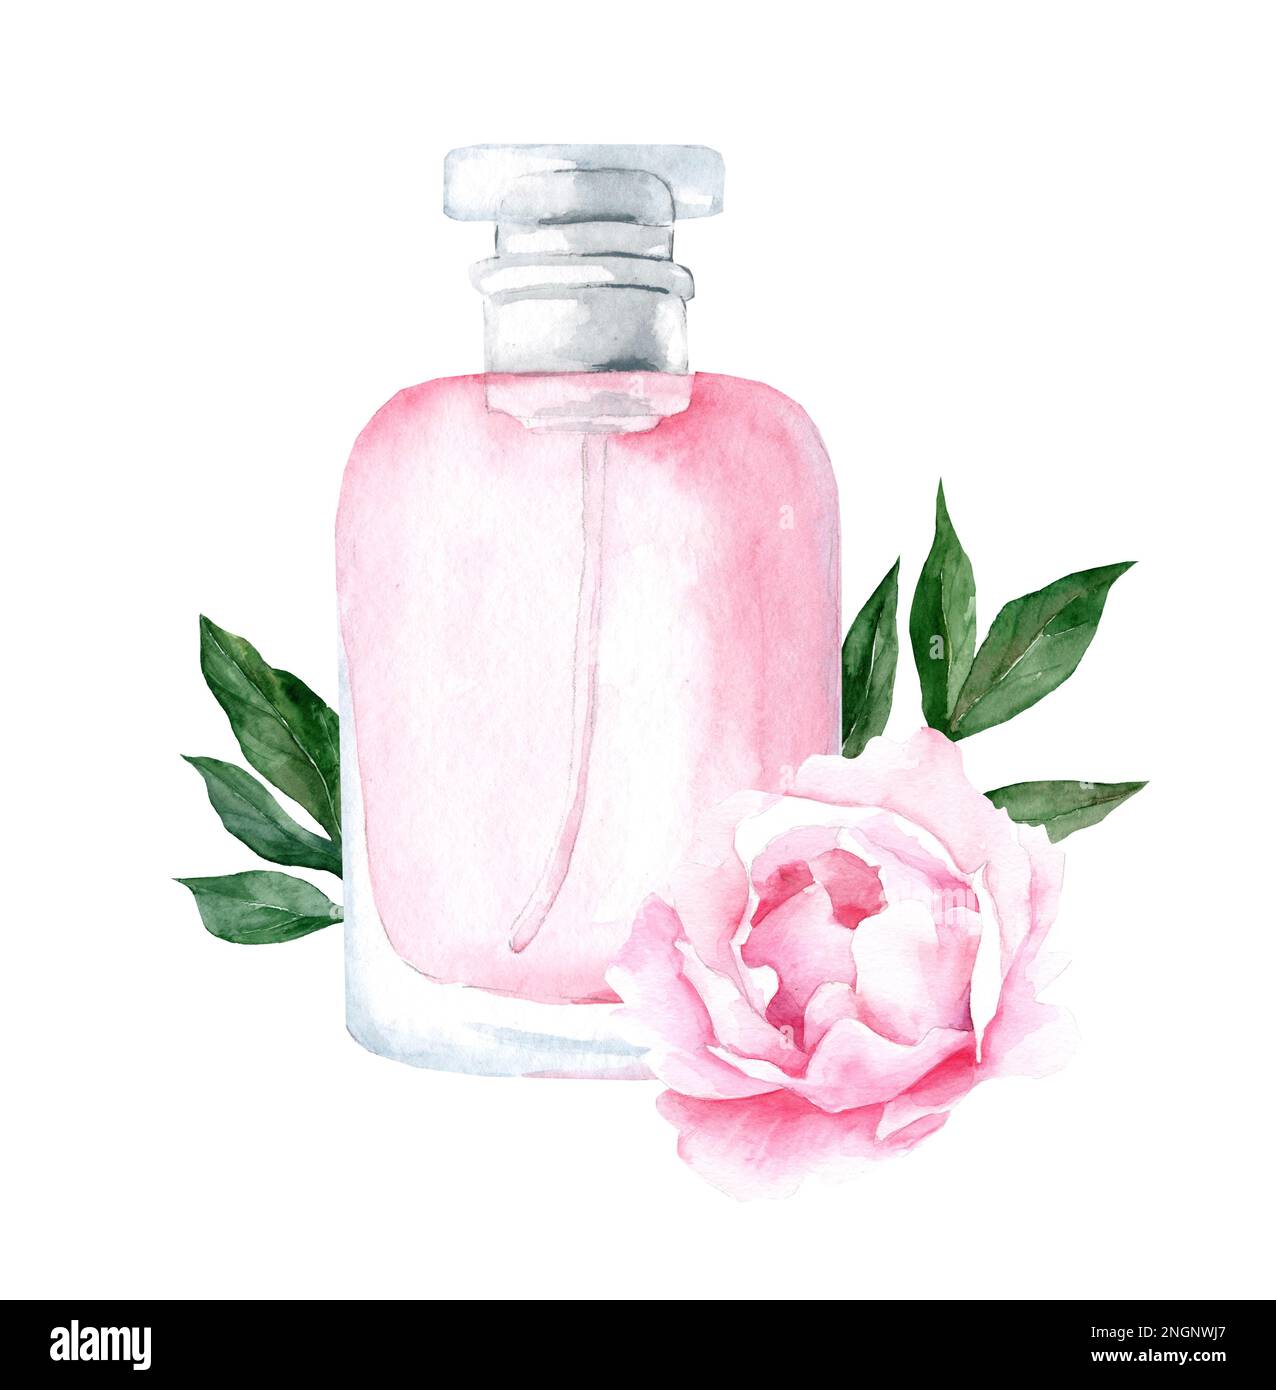 bottiglia di profumo in vetro rosa con fiori di peonia e foglie. Illustrazione disegnata a mano con acquerello Foto Stock